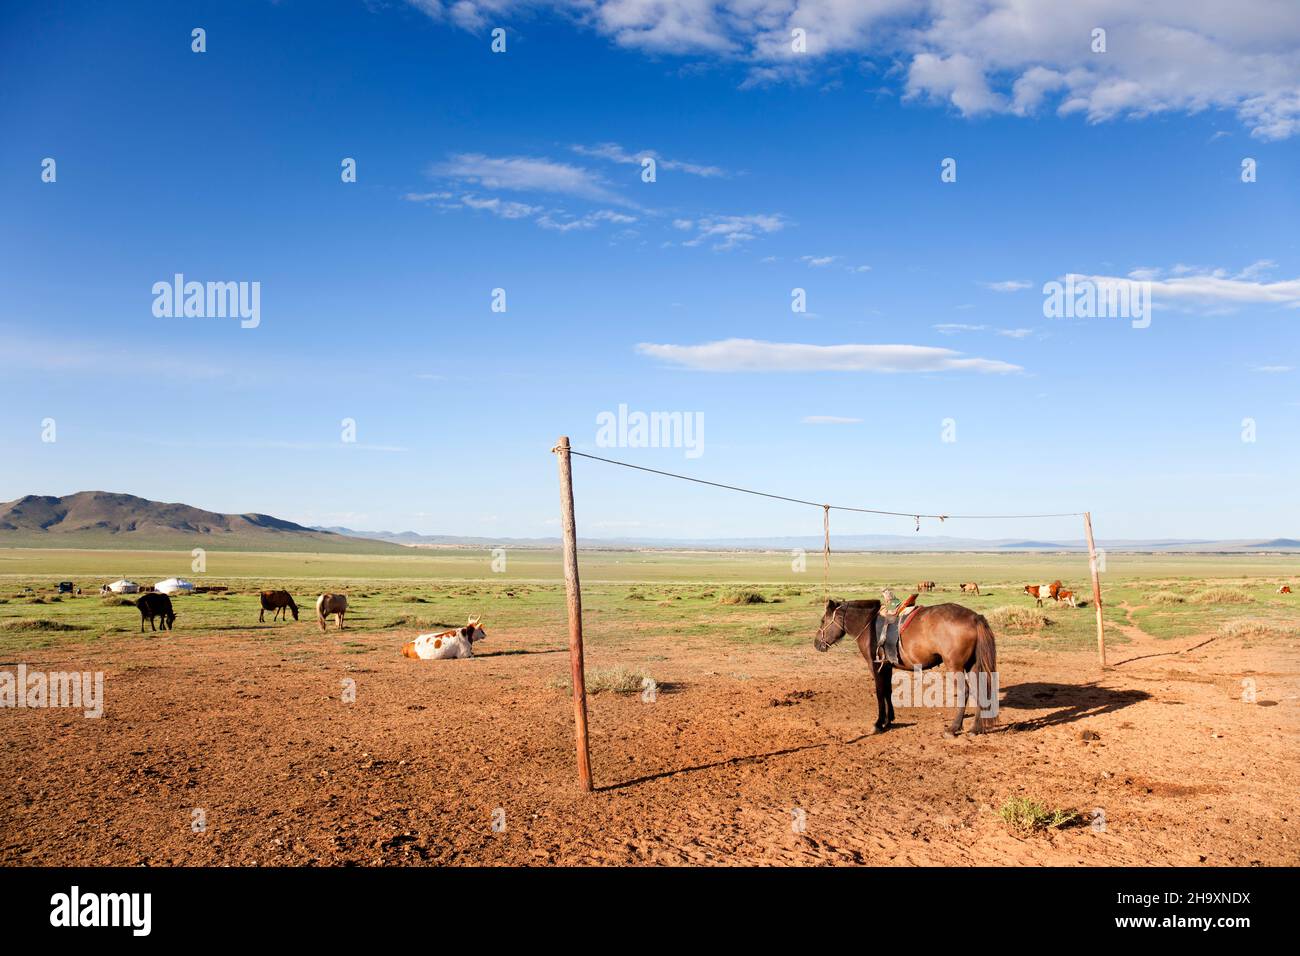 Bétail dans le désert de Gobi en Mongolie.Un cheval est attaché sur une corde Banque D'Images